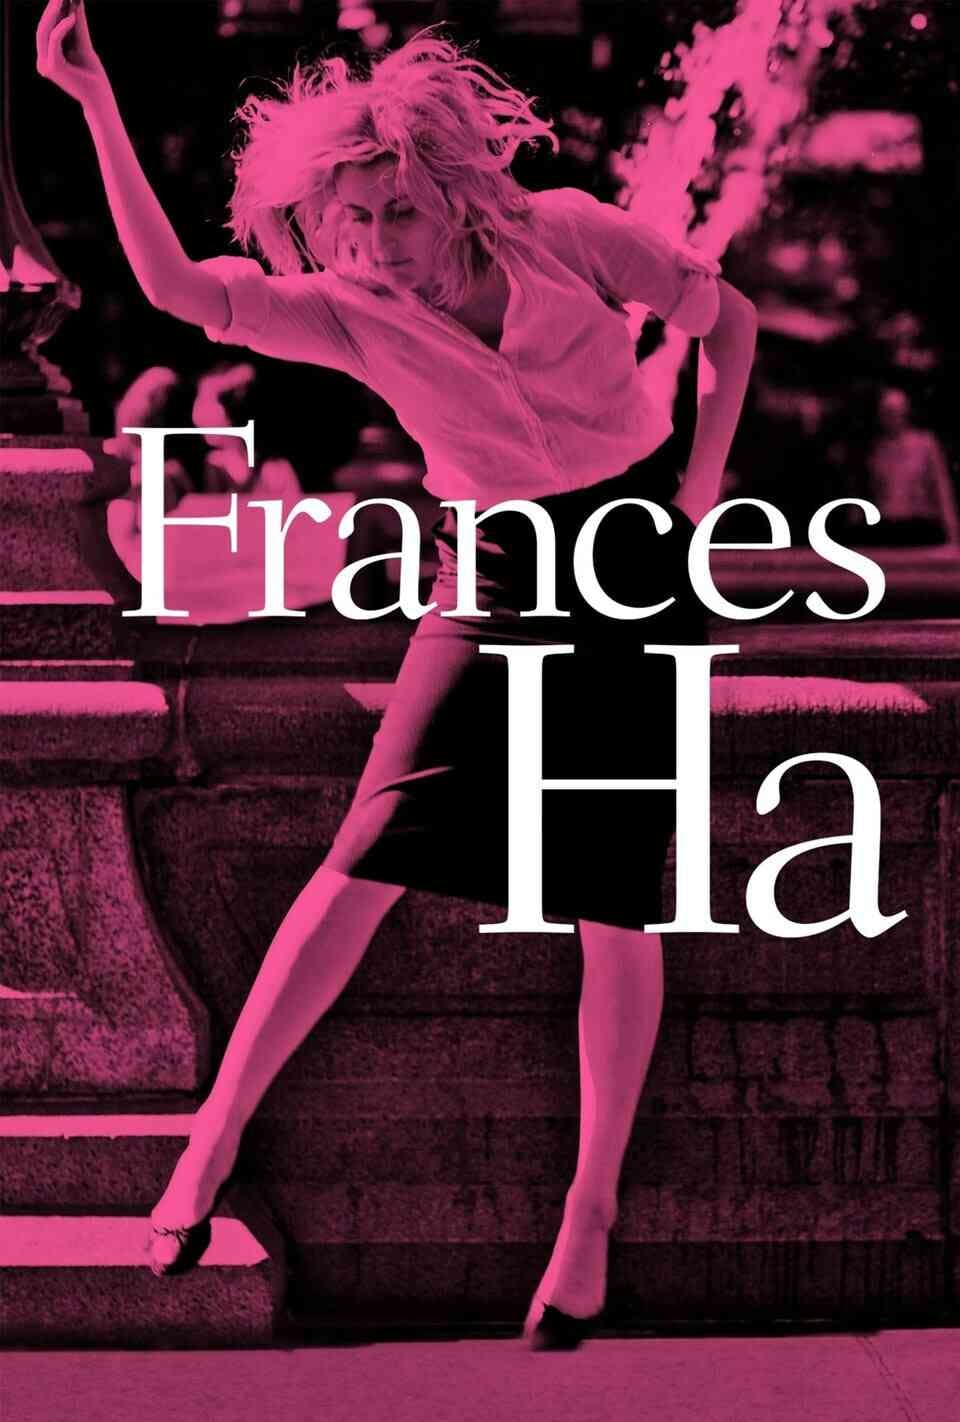 Read Frances Ha screenplay (poster)